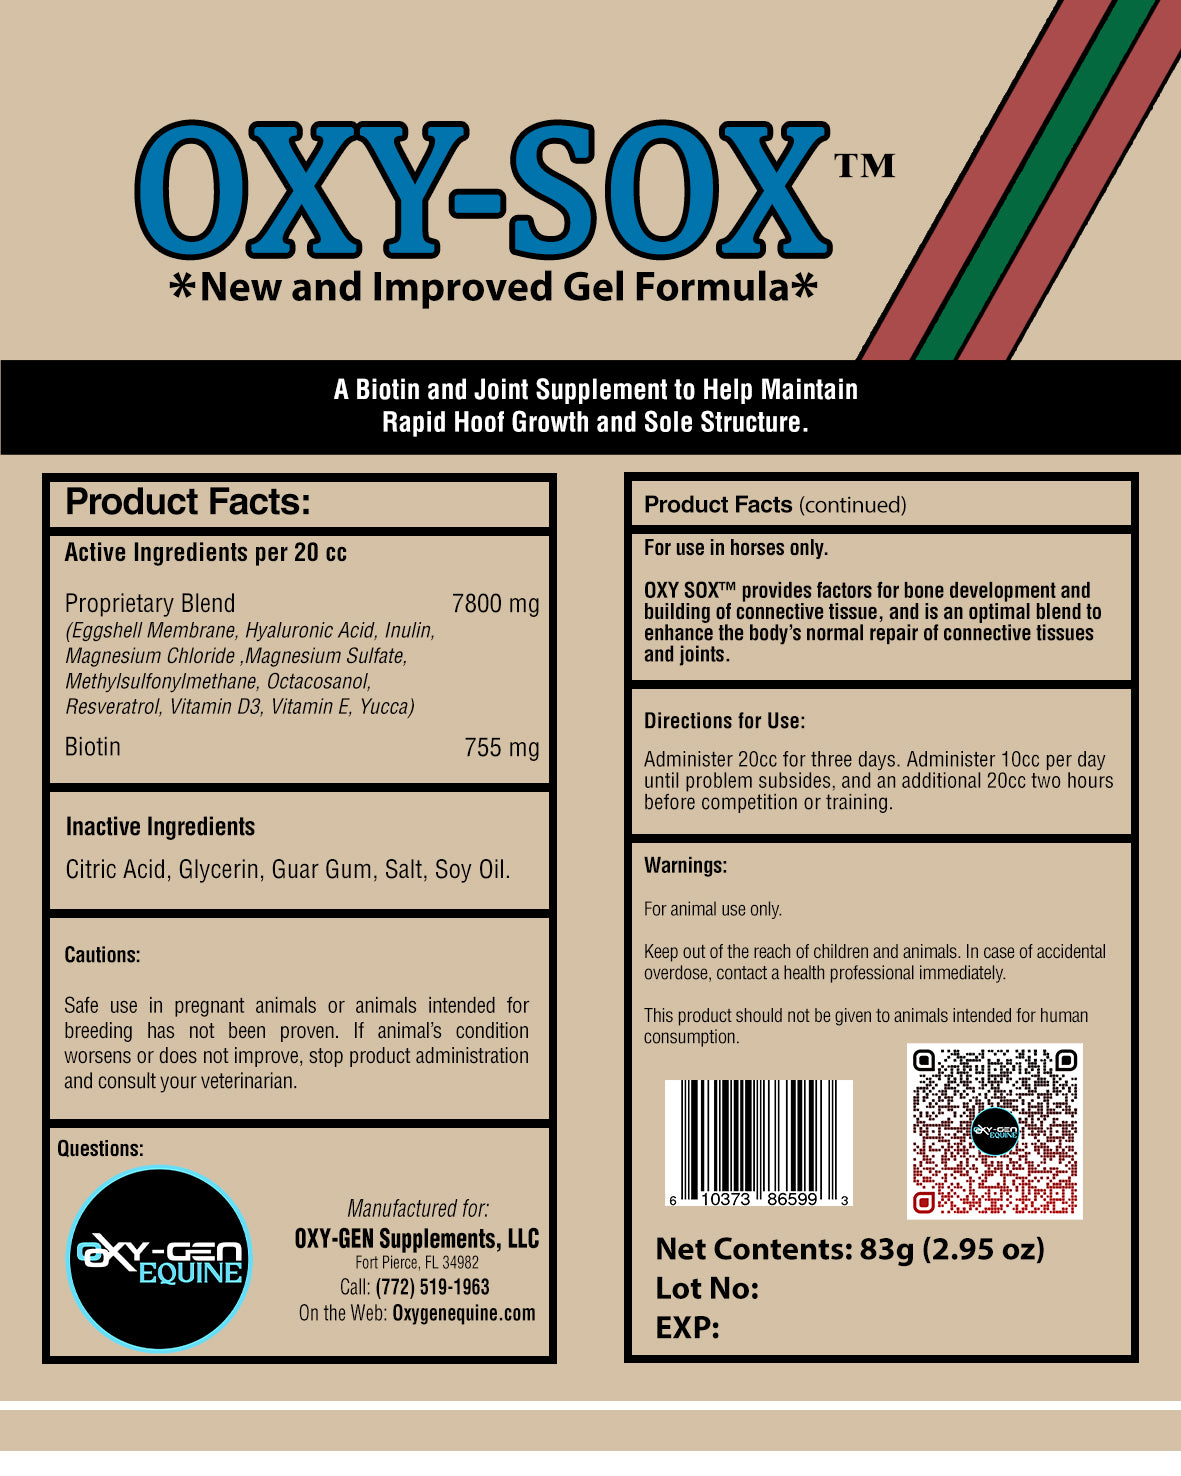 Oxy-Sox